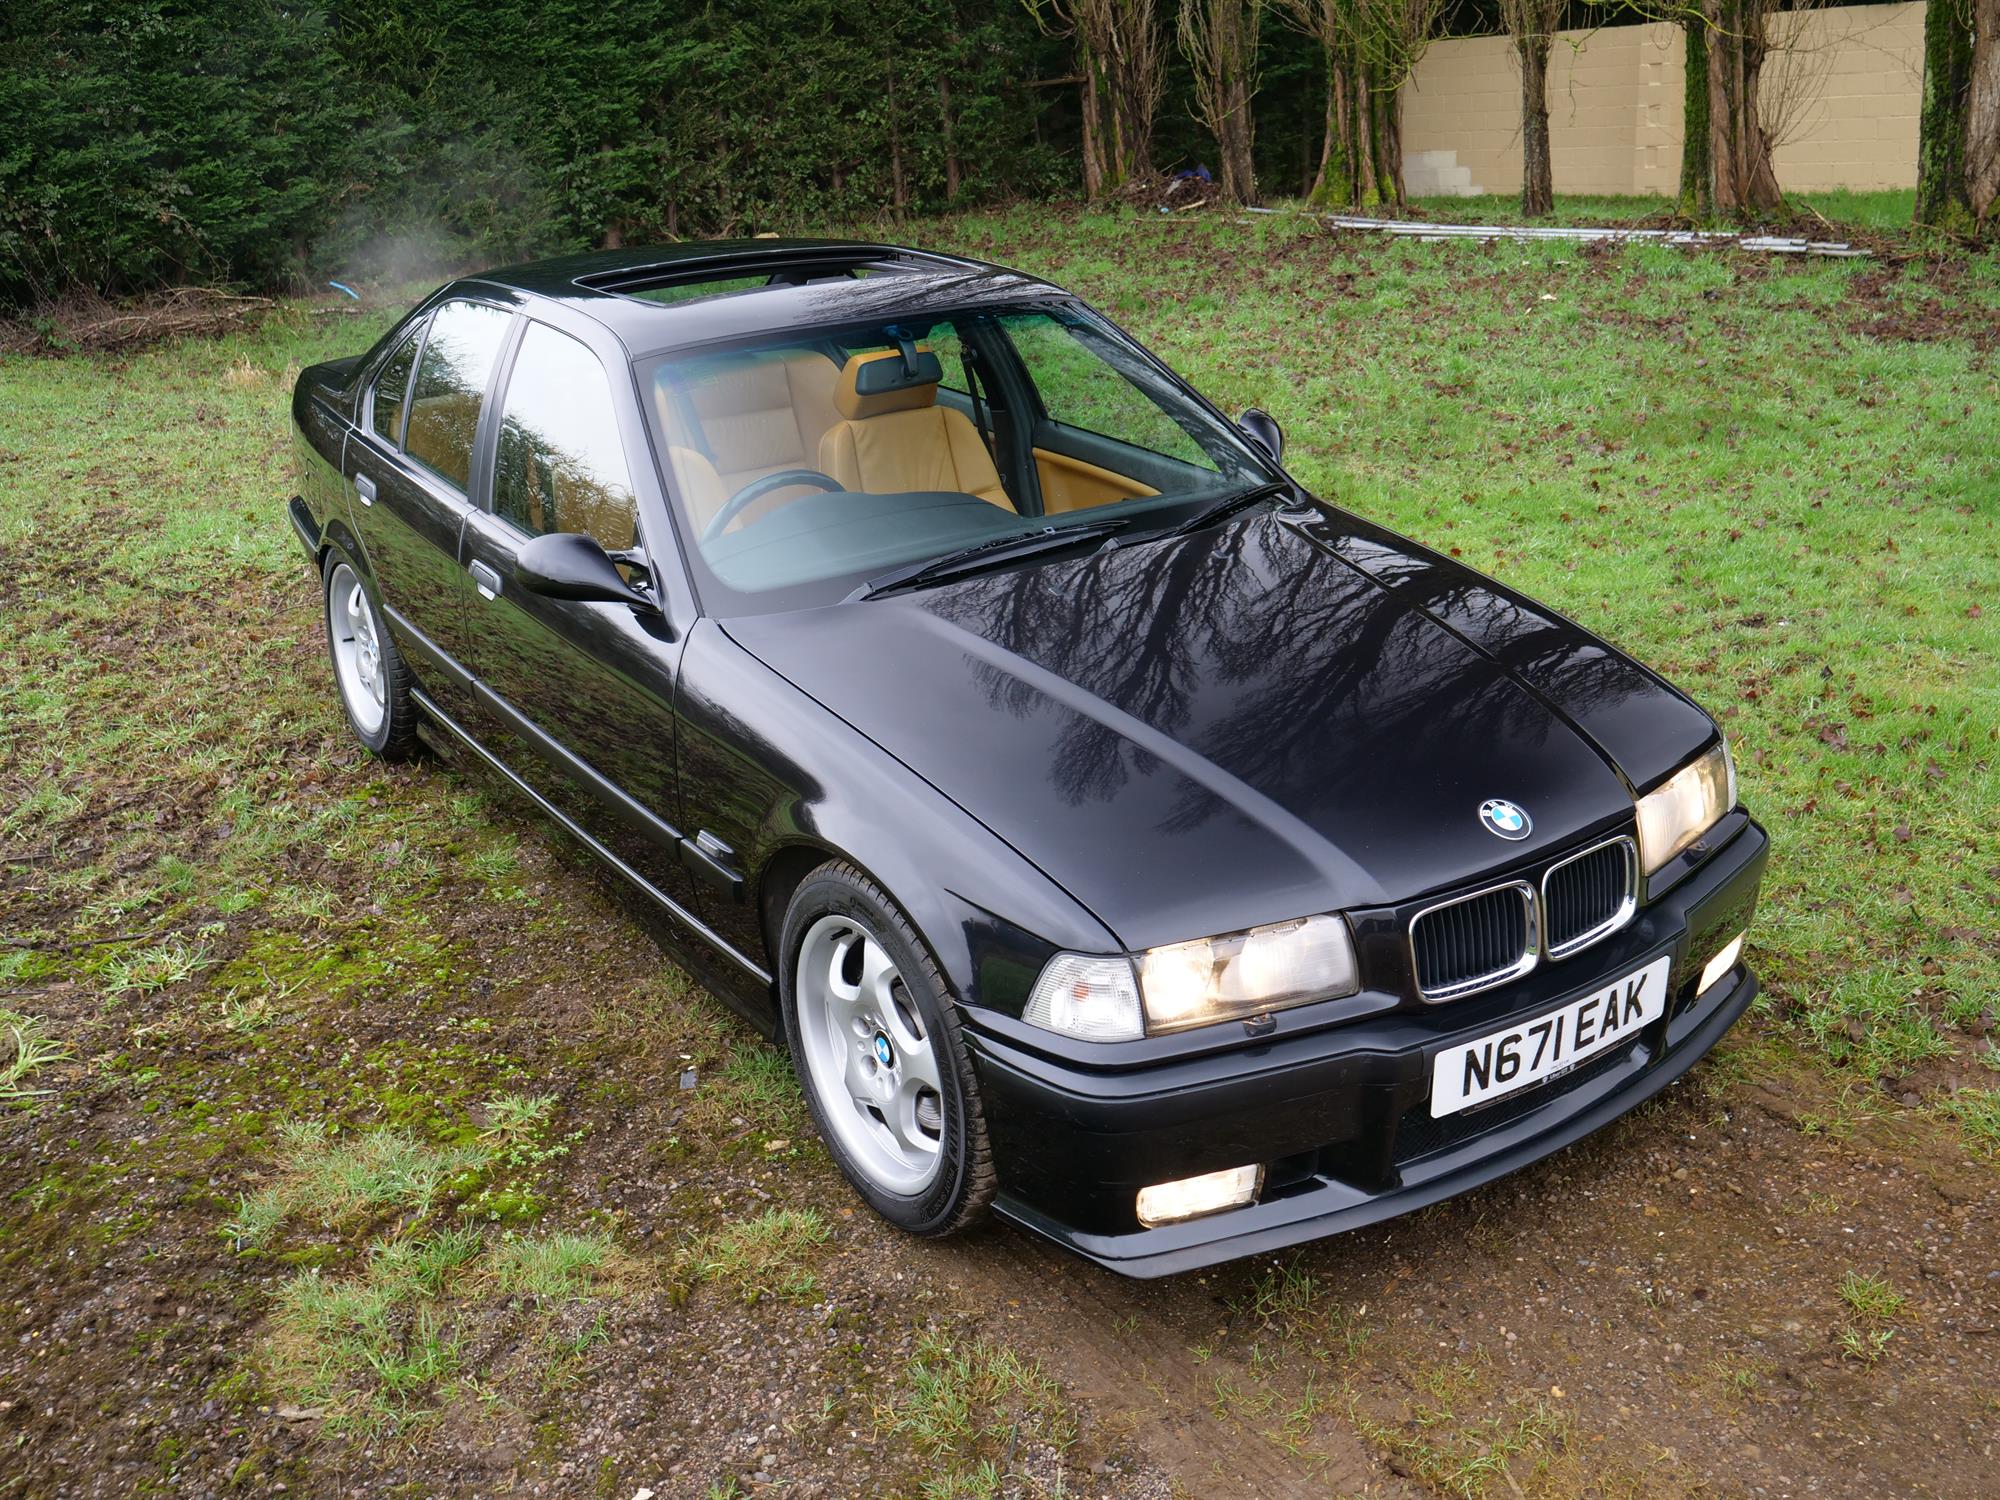 1996 BMW M3 Evolution (E36) - Image 16 of 18